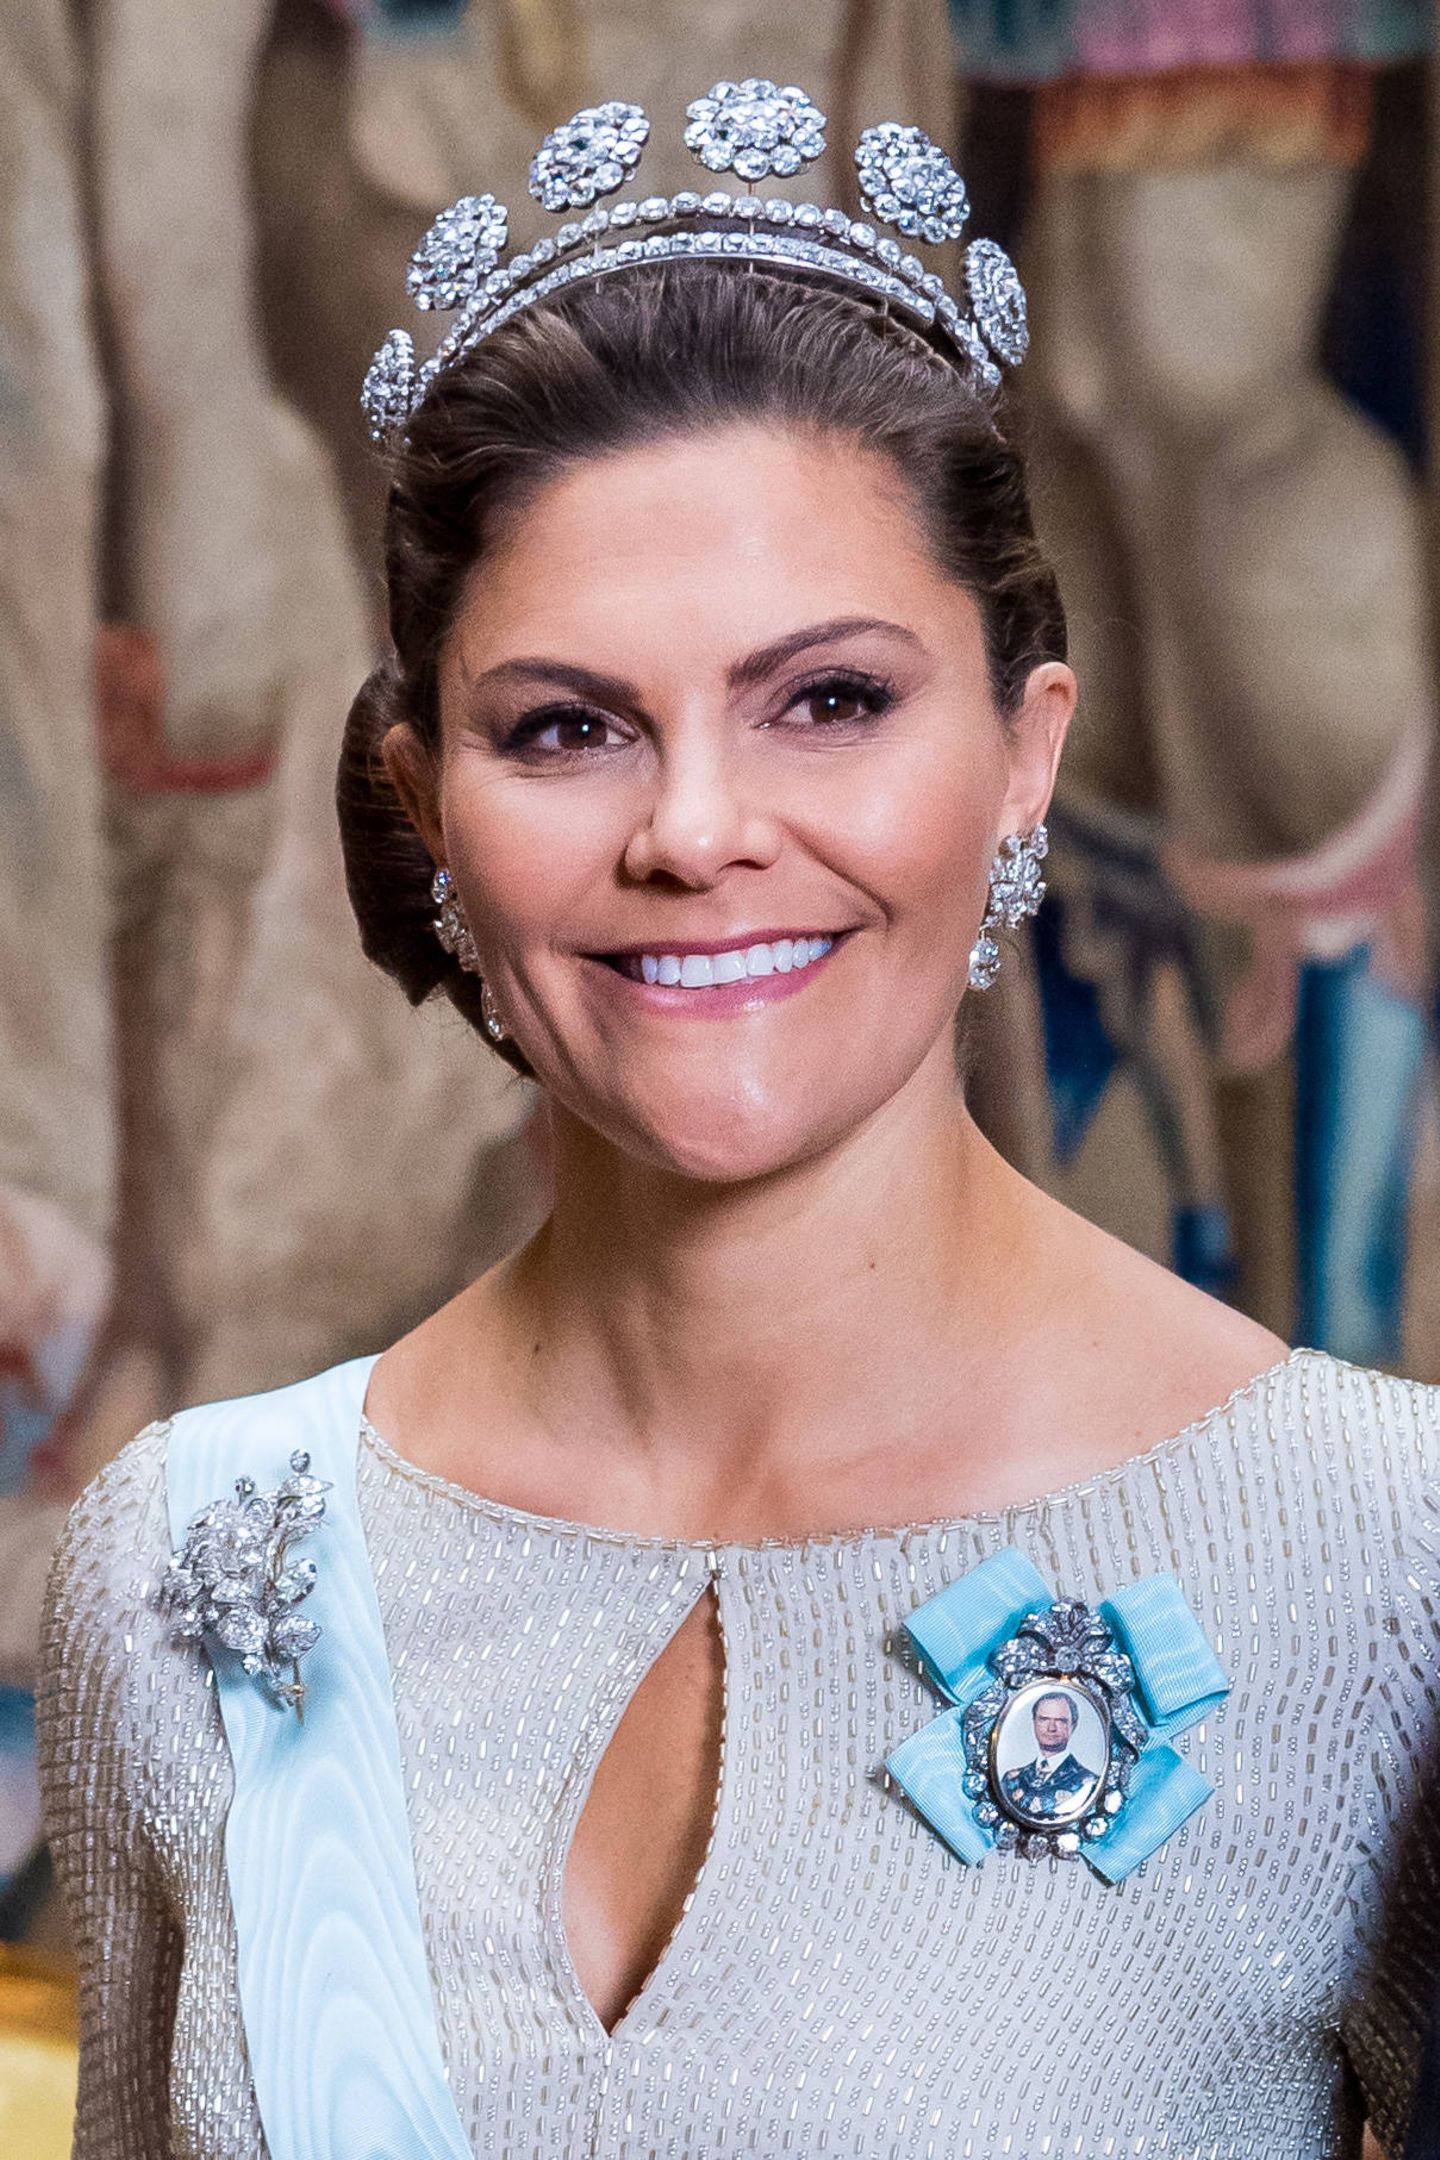 Skandinavien-Royals: 12. November 2019 Wunderschön gekrönt mit der "6-Knopf-Tiara" und einer Carl-Gustaf-Portrait-Brosche am Kleid geht es für Prinzessin Victoria zum "Representationsmiddag".